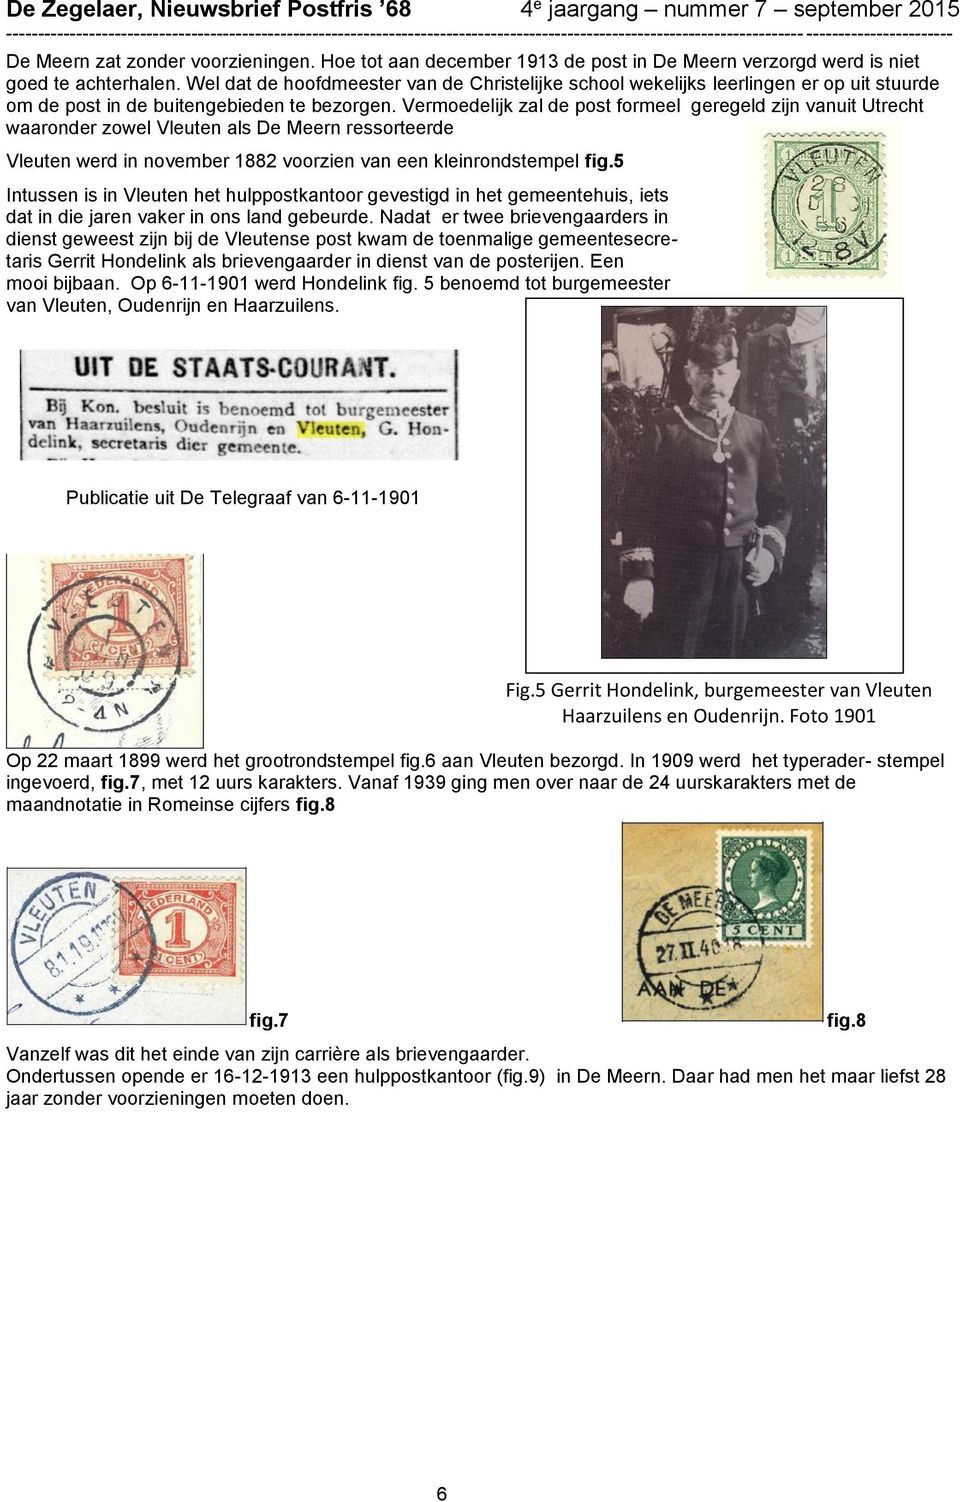 Vermoedelijk zal de post formeel geregeld zijn vanuit Utrecht waaronder zowel Vleuten als De Meern ressorteerde Vleuten werd in november 1882 voorzien van een kleinrondstempel fig.